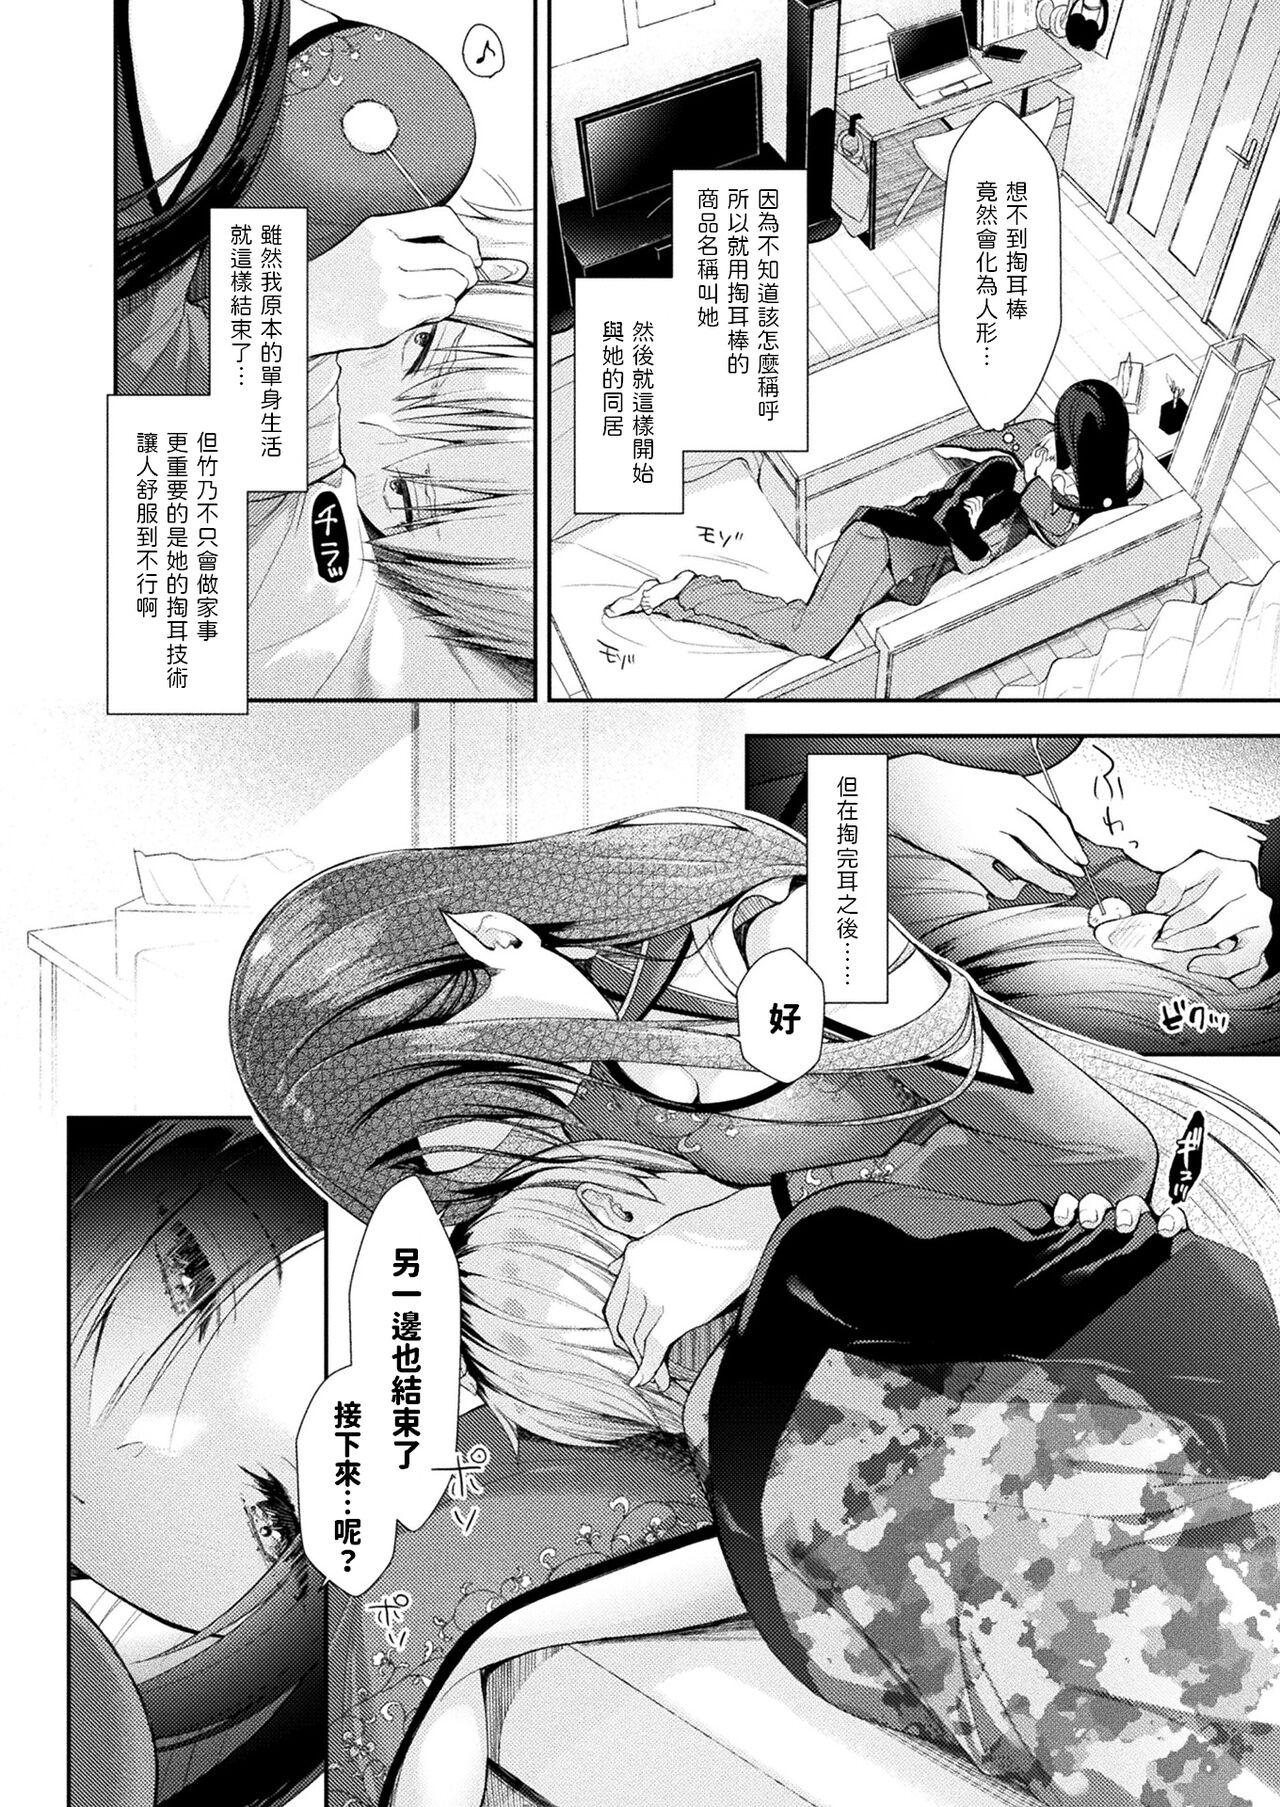 Chacal Take no Mimiiyashi Flaquita - Page 4